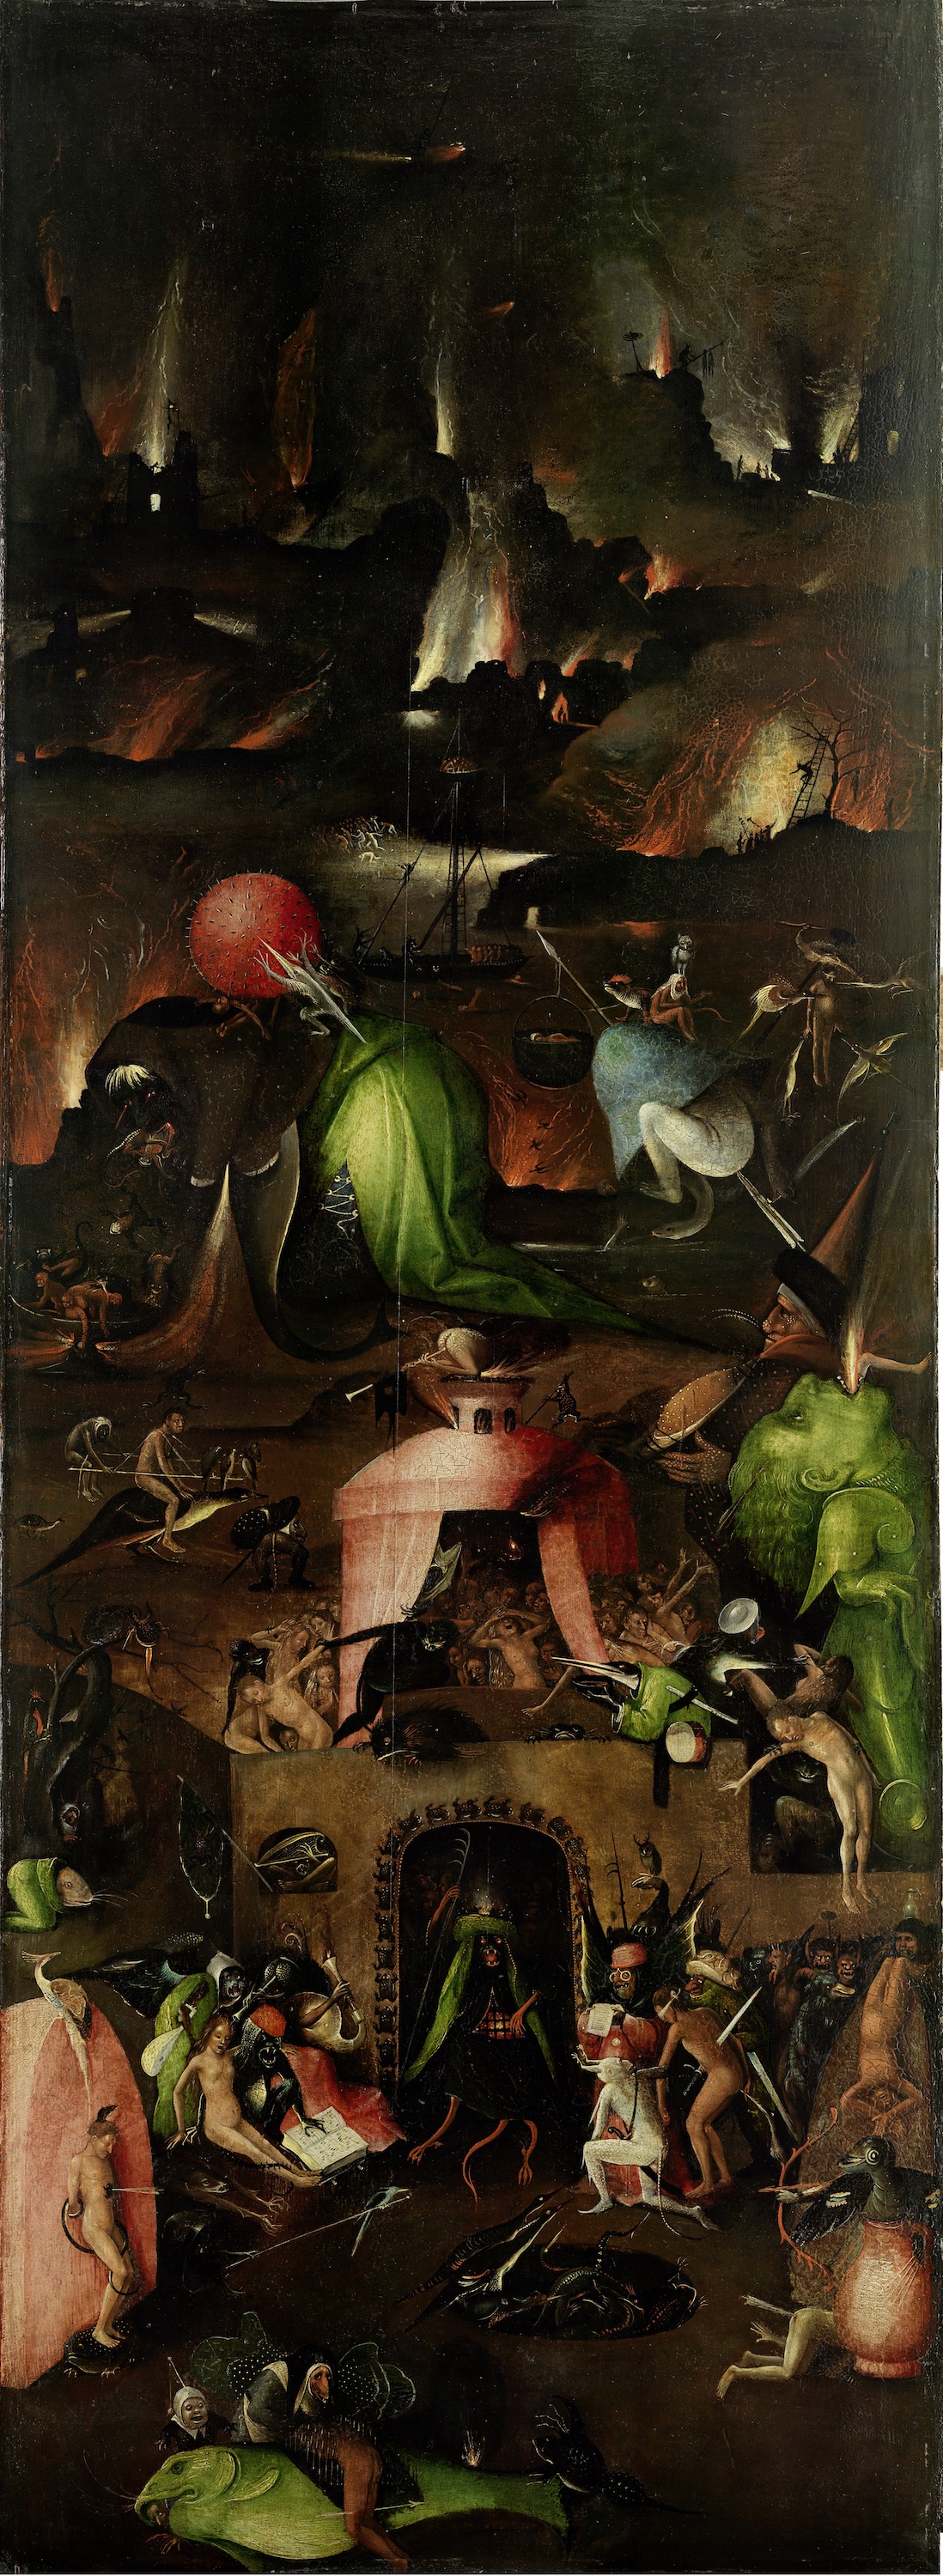 최후의 심판 - 삼면화 중 오른쪽 판넬 by Hieronymus Bosch - 1500년 경 